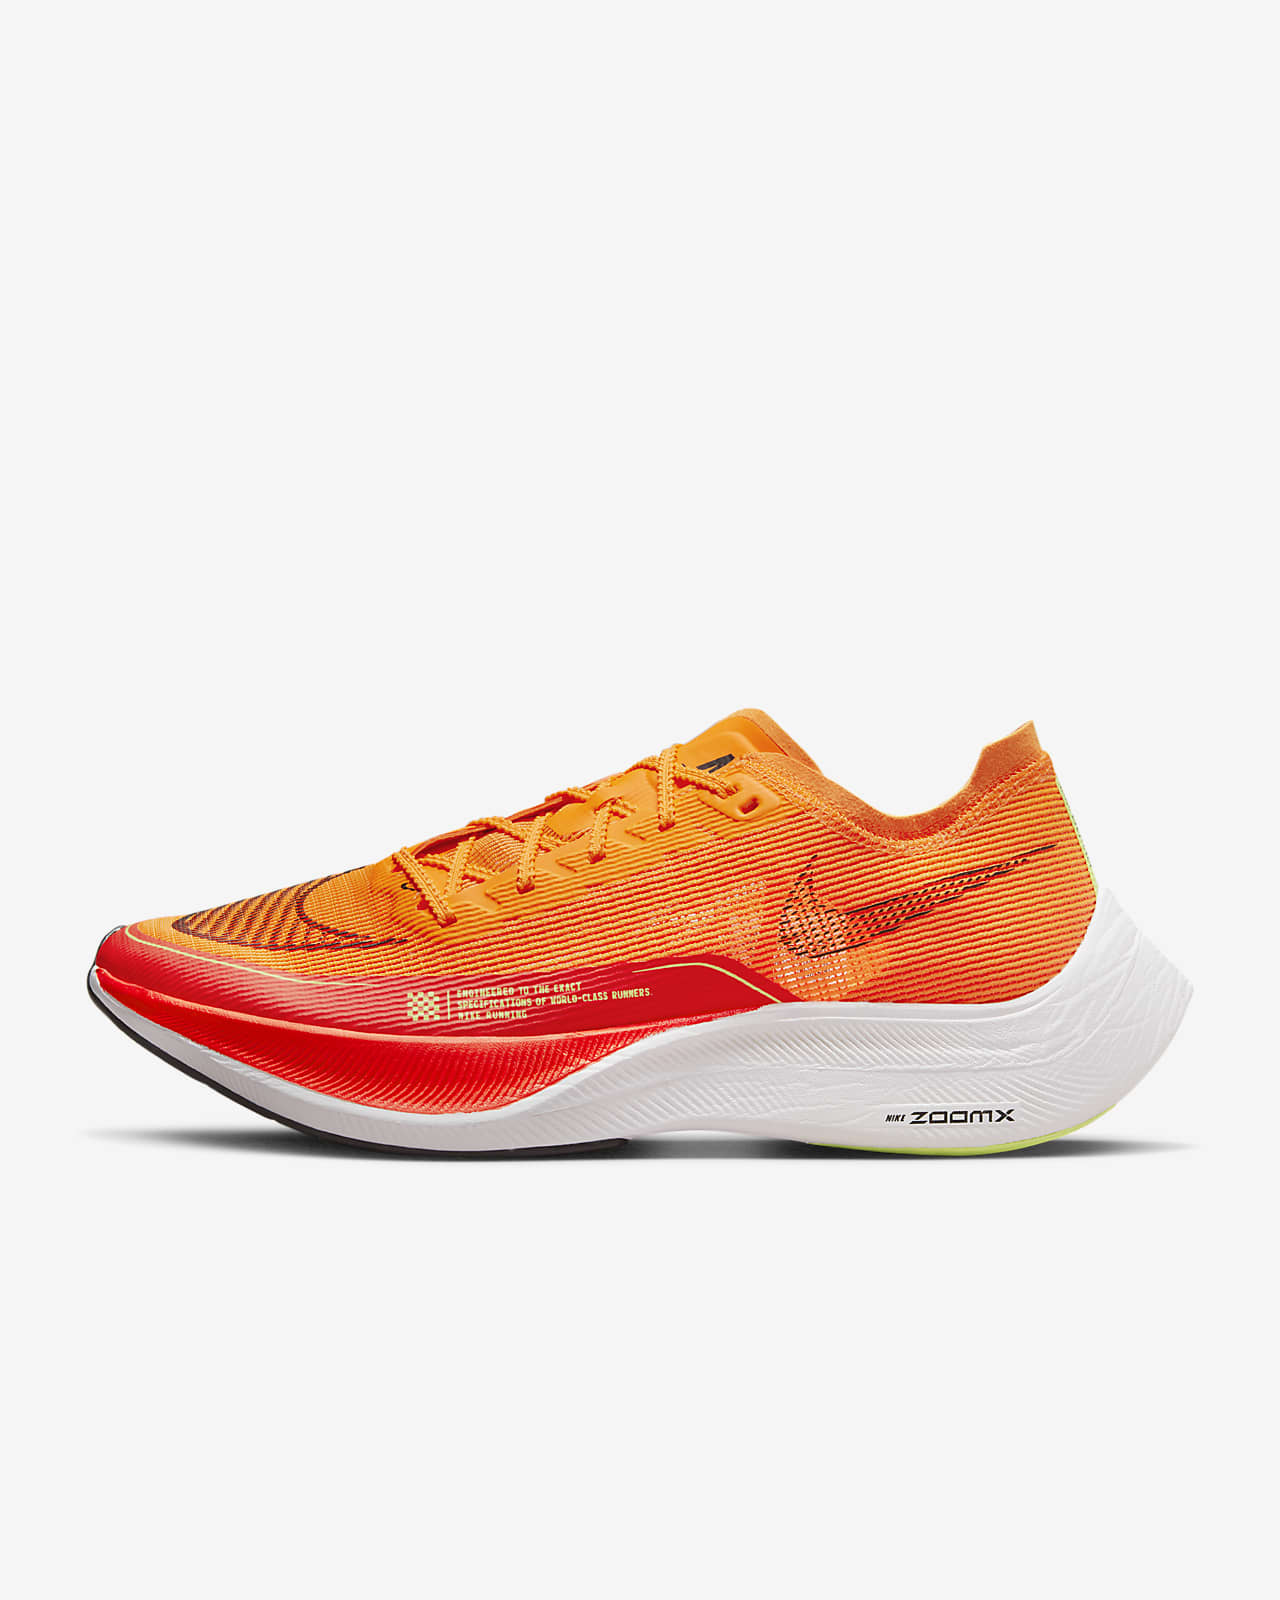 Nike ZoomX Vaporfly Next% 2 男子全掌碳板竞速跑步鞋